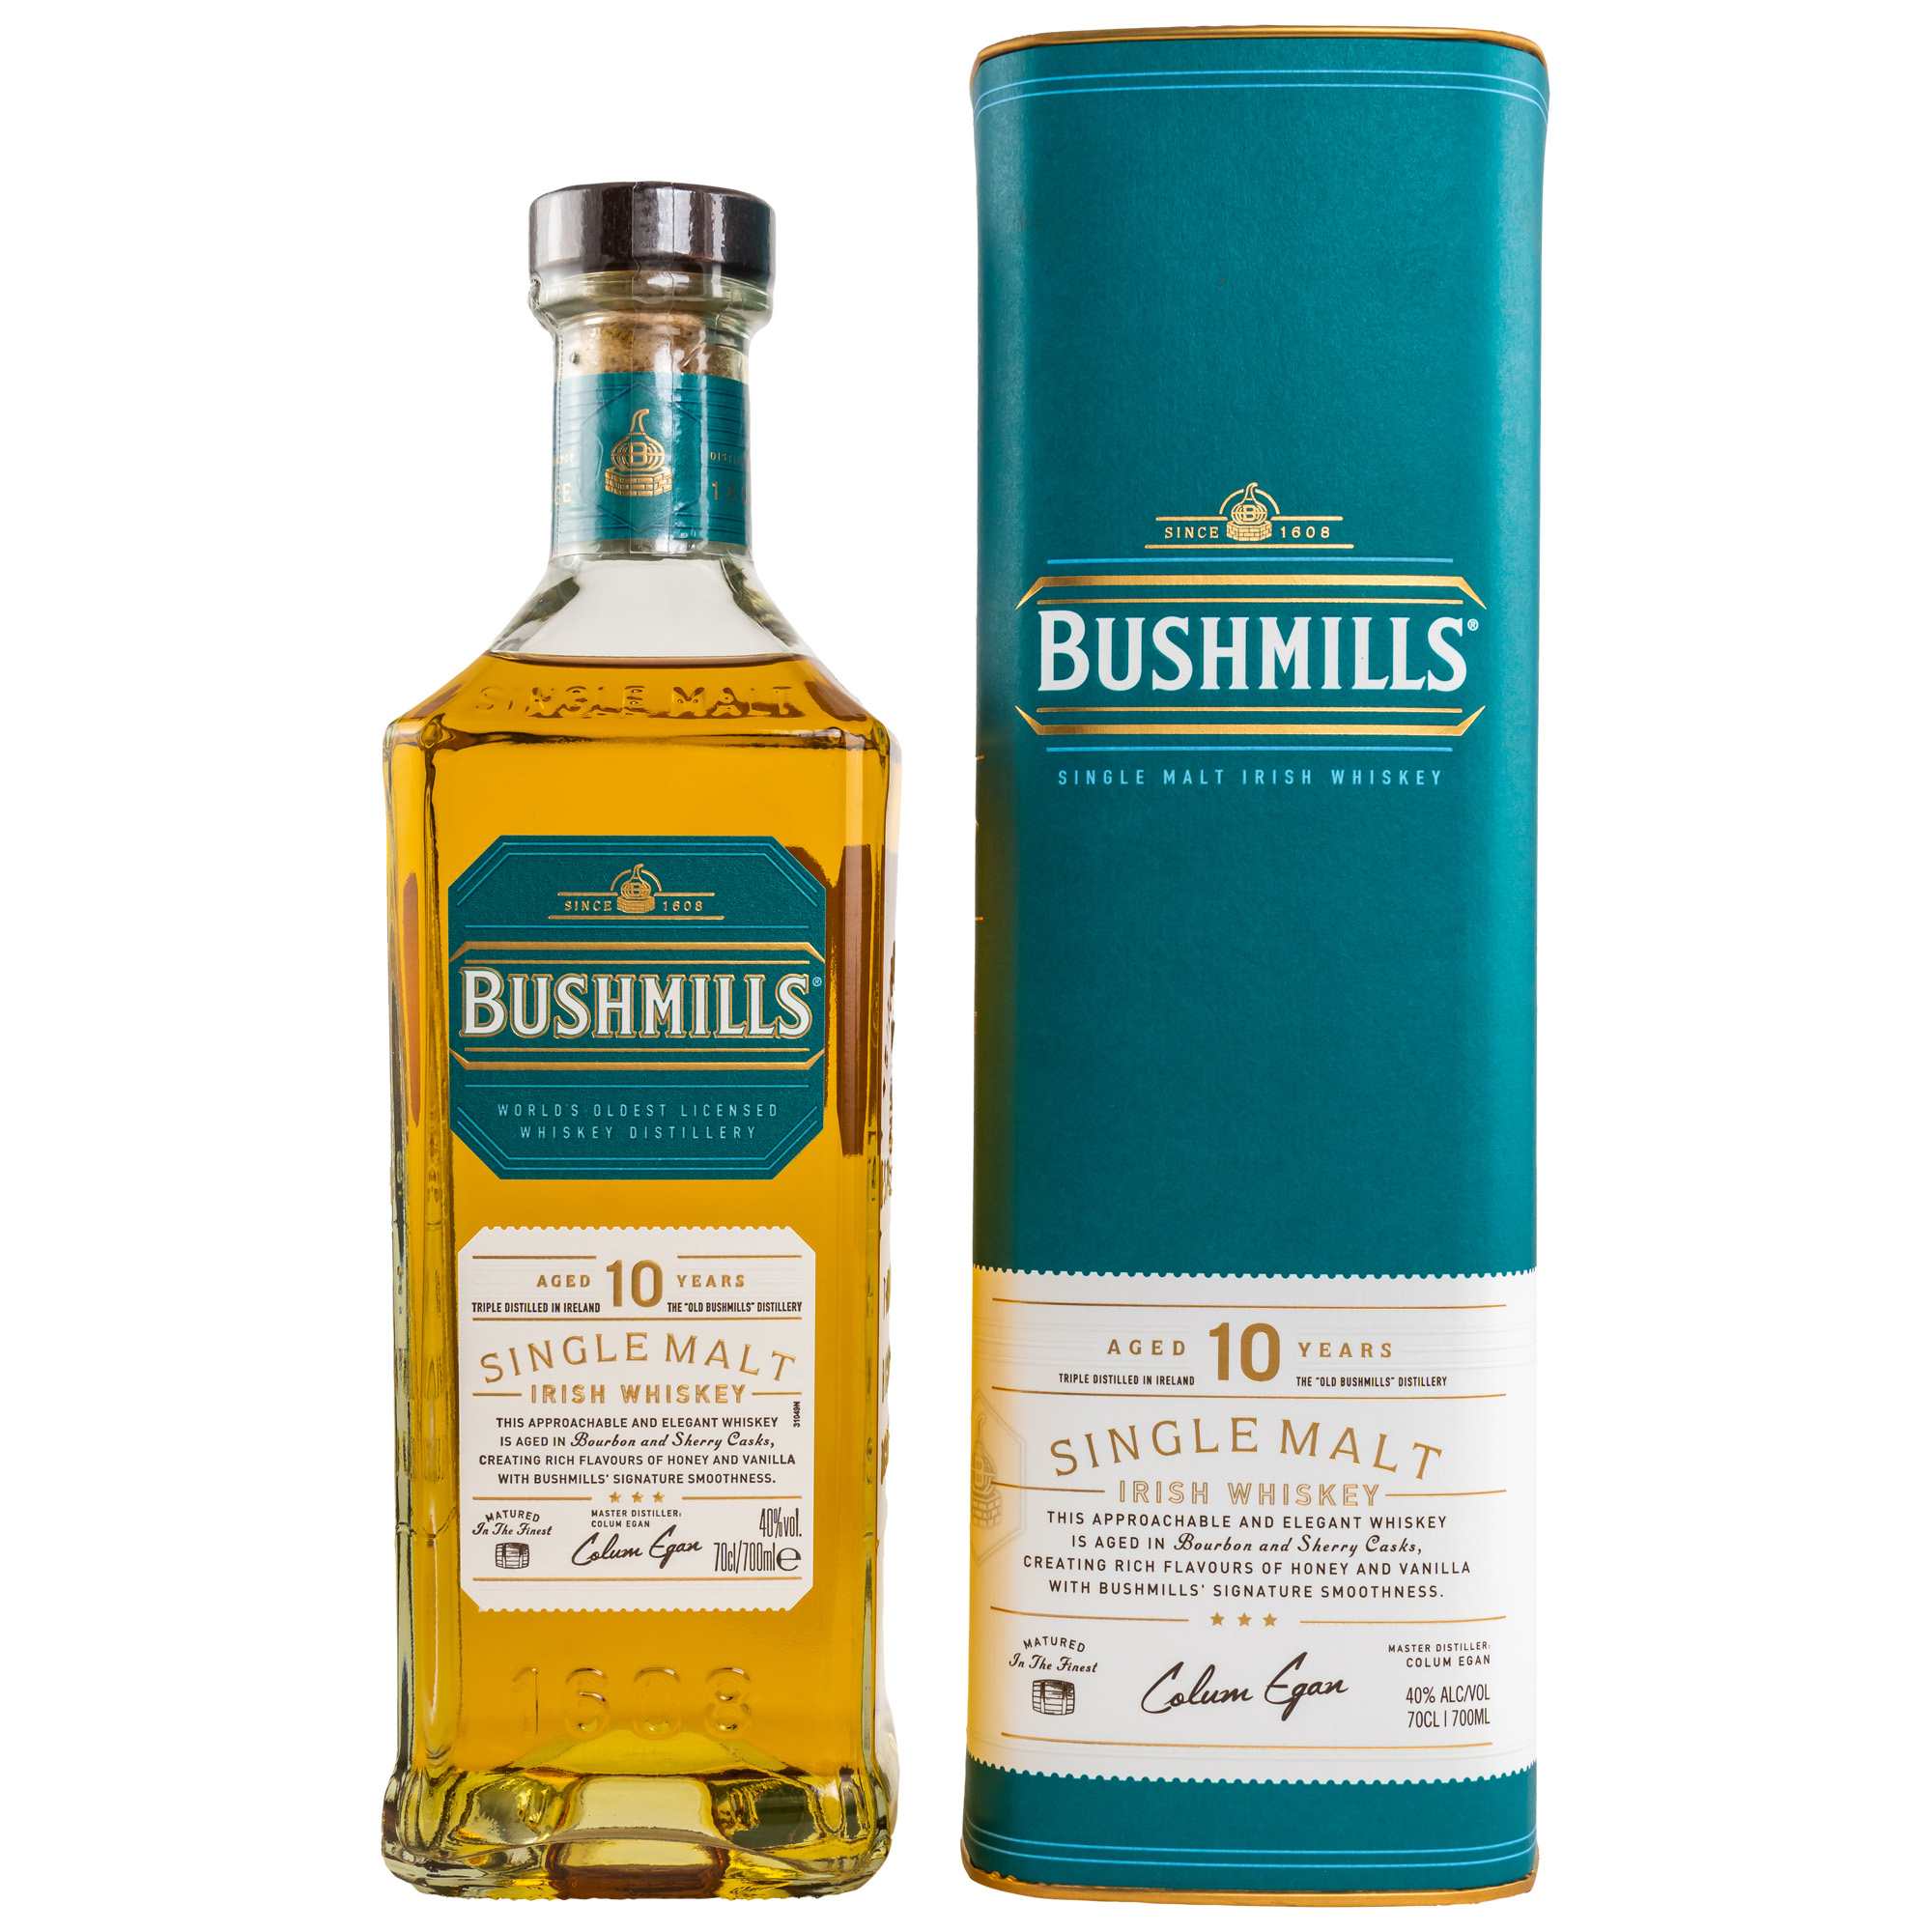 Bushmills - Klassisch Irisch neu erfunden